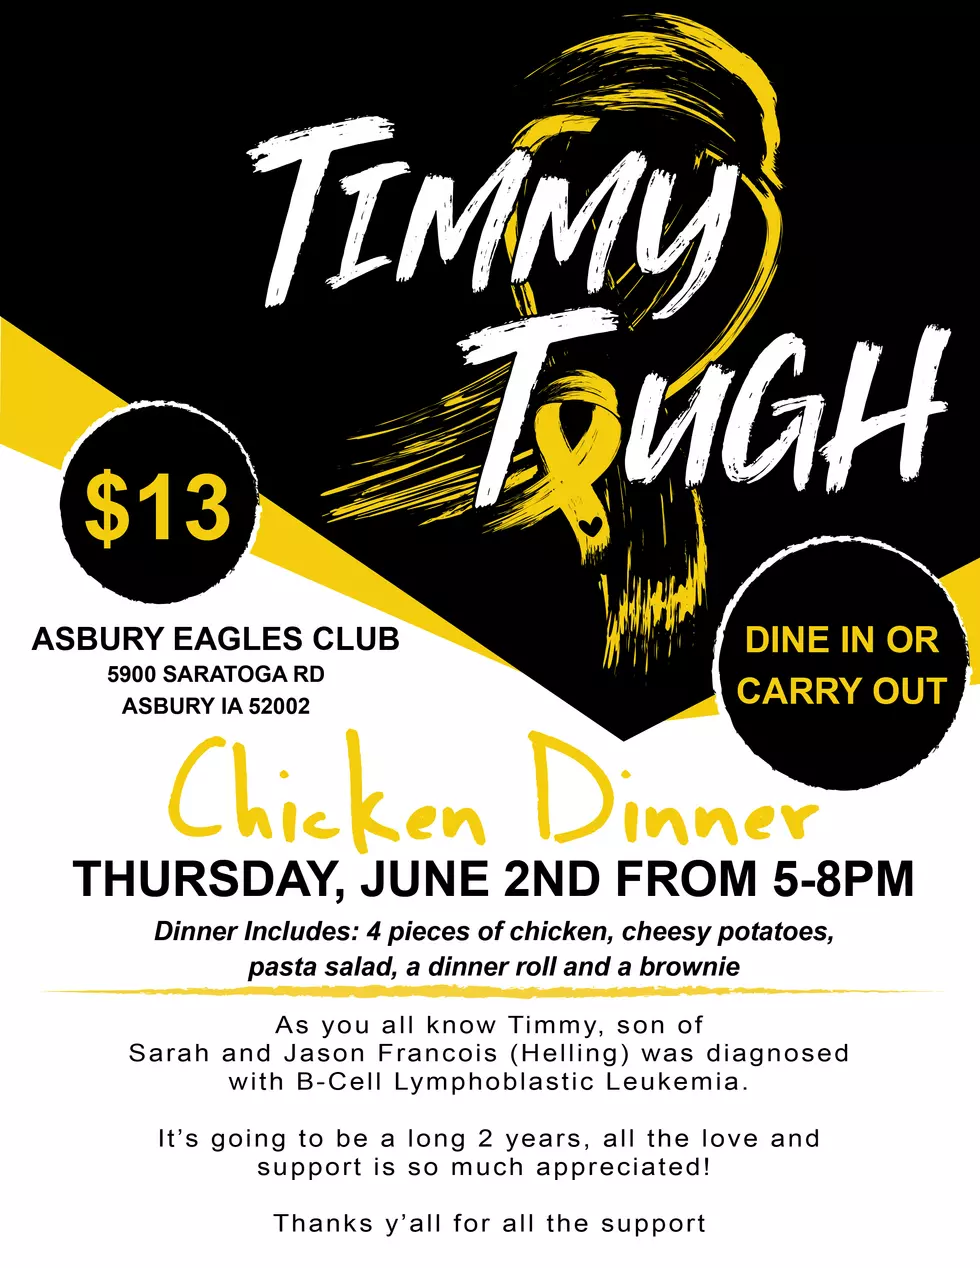 Asbury Eagles Club Hosting “Timmy Tough” Fundraiser